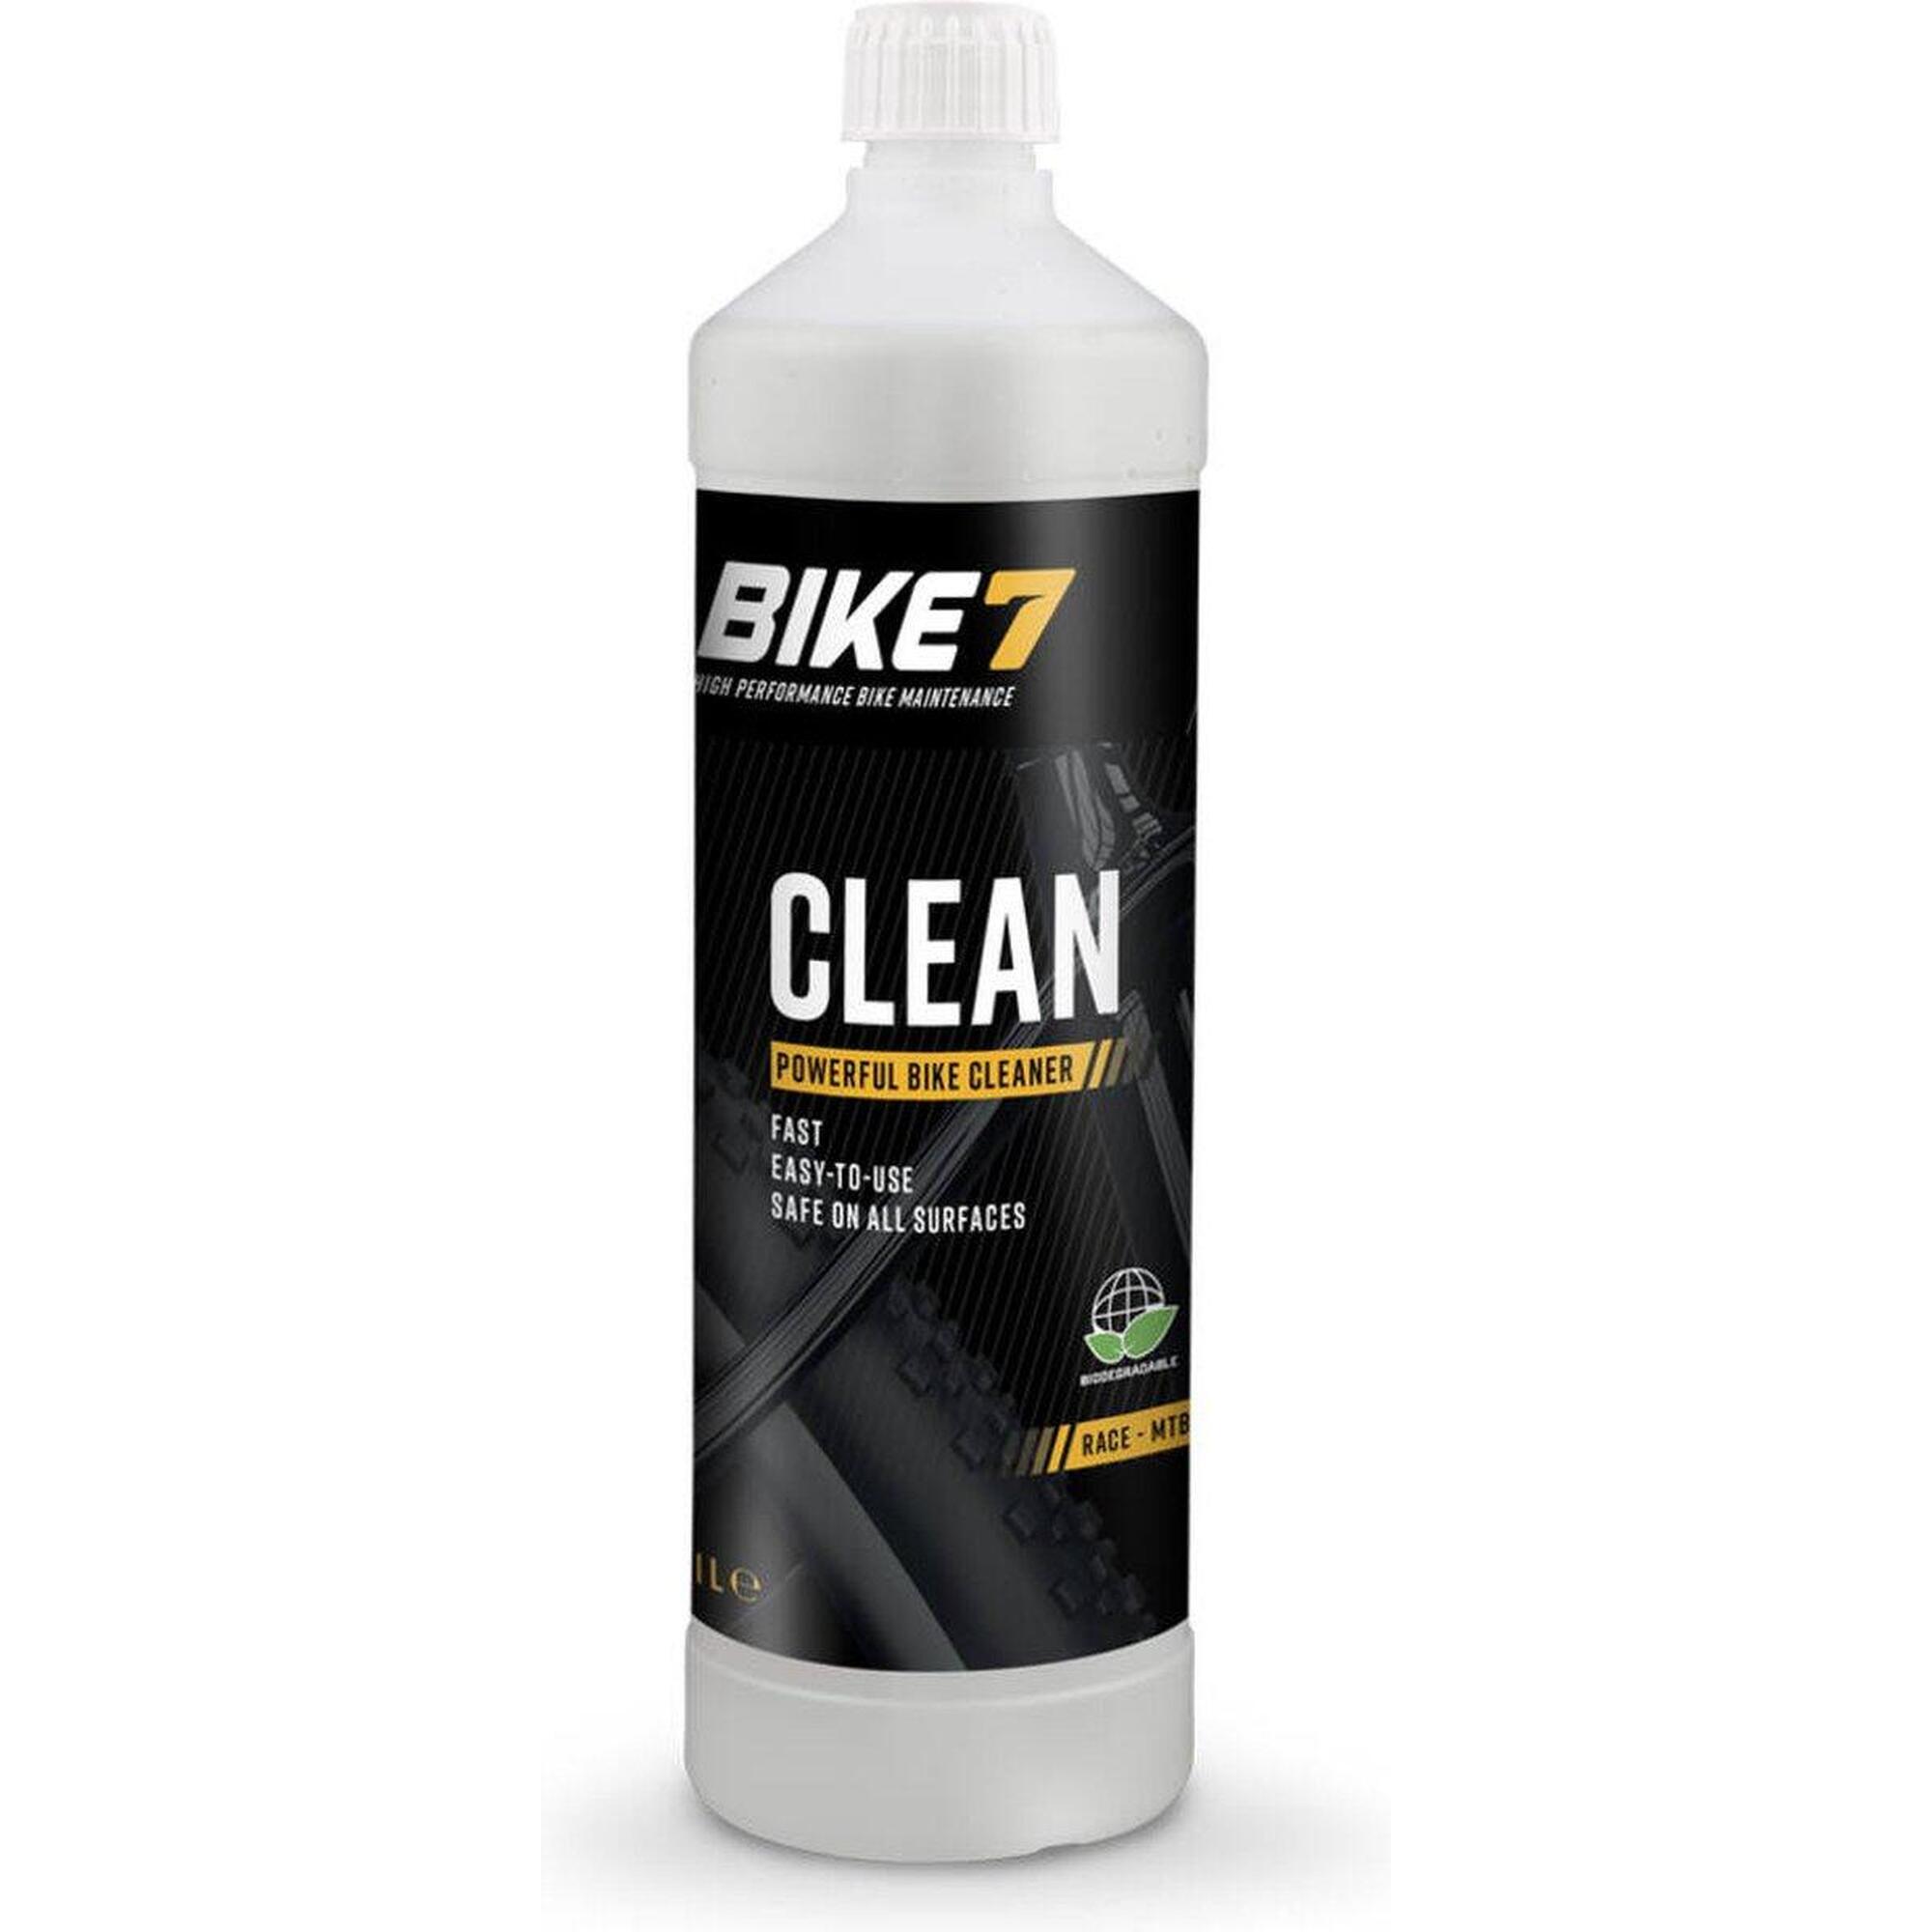 Fahrradzubehör Kraftvoller Reiniger für alle Oberflächen - Bike7 Clean 1L